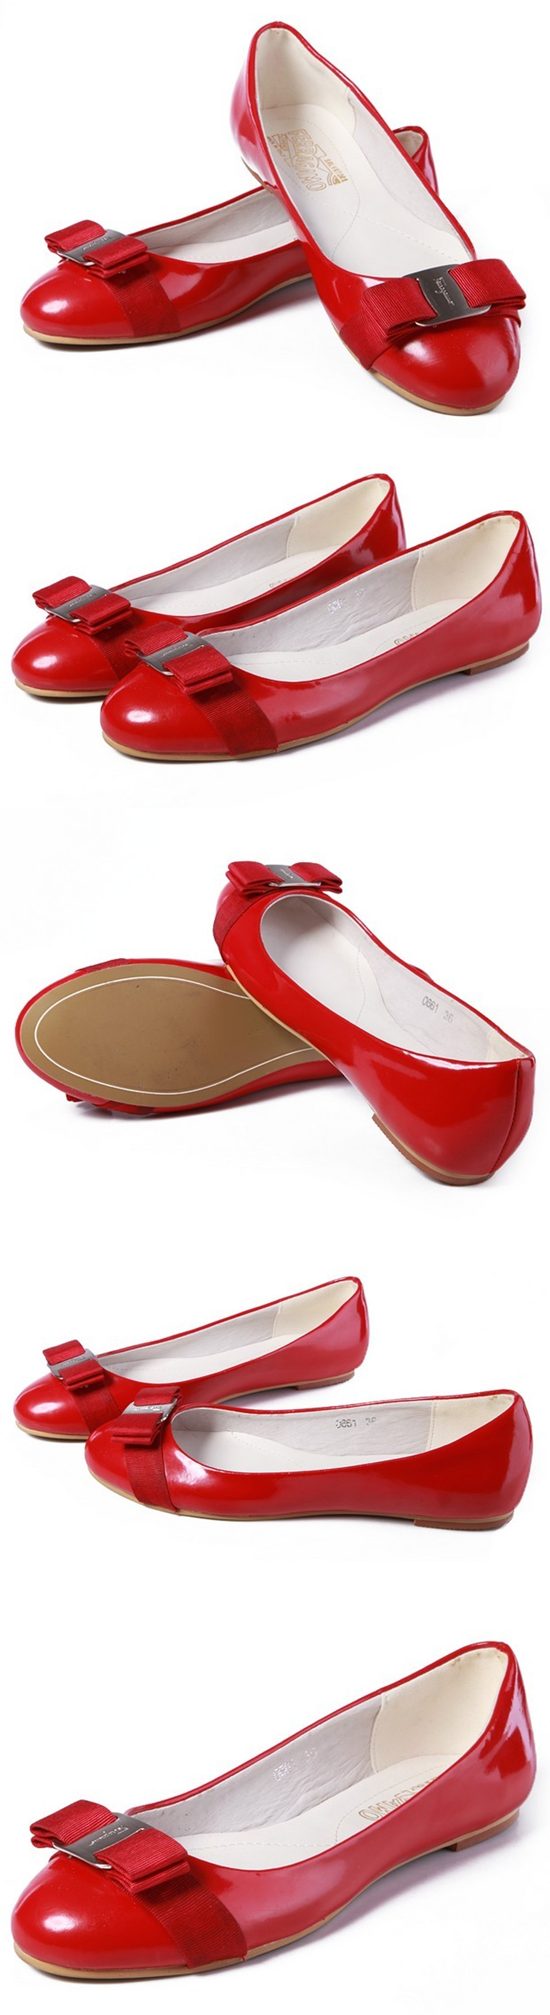 ブランド通販フェラガモ 靴 コピー FERRAGAMO スーパーコピー f336 靴激安屋-ブランドコピー